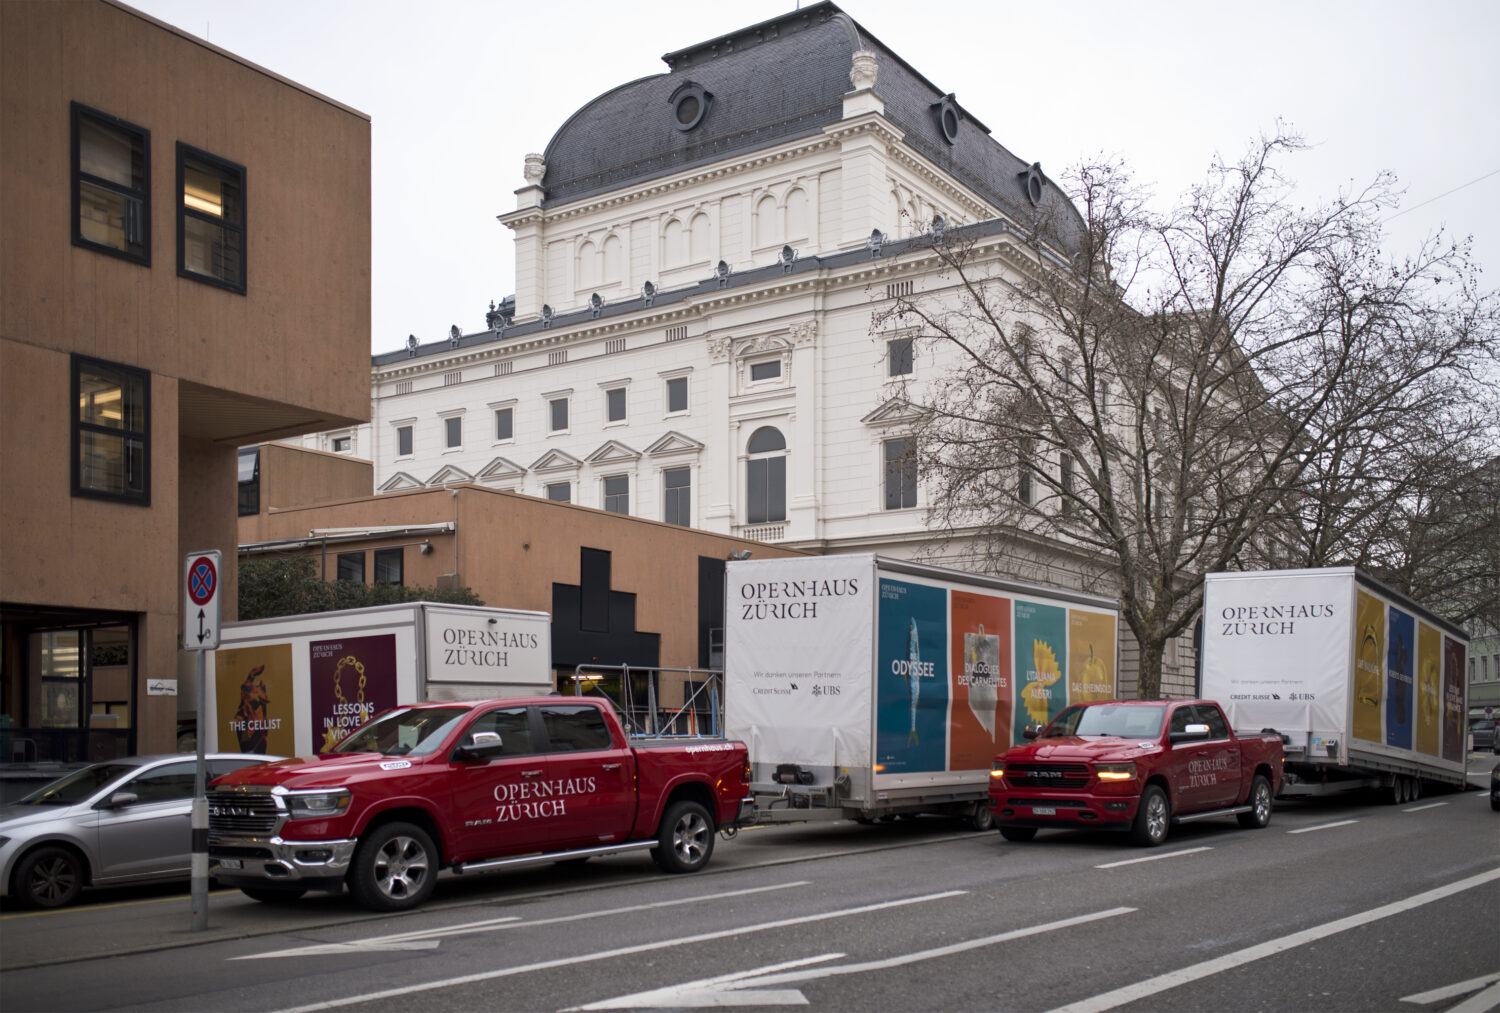 Eine neue Auslegeordnung für das Opernhaus Zürich?